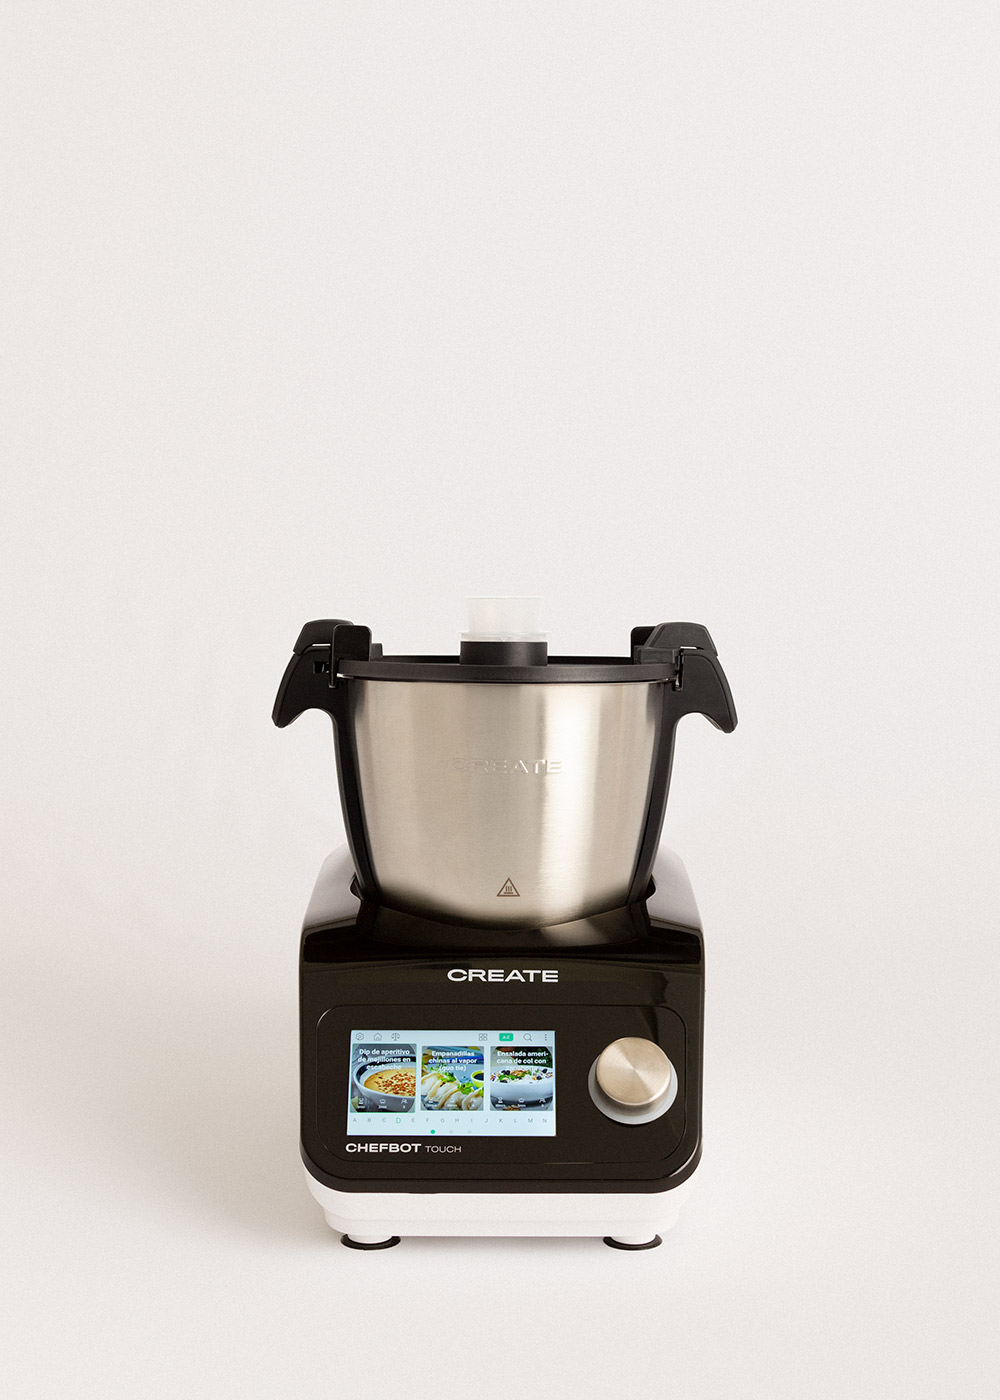 Chefbot Touch - Robot de cocina inteligente + Cesta Vaporera – CREATE MÉXICO